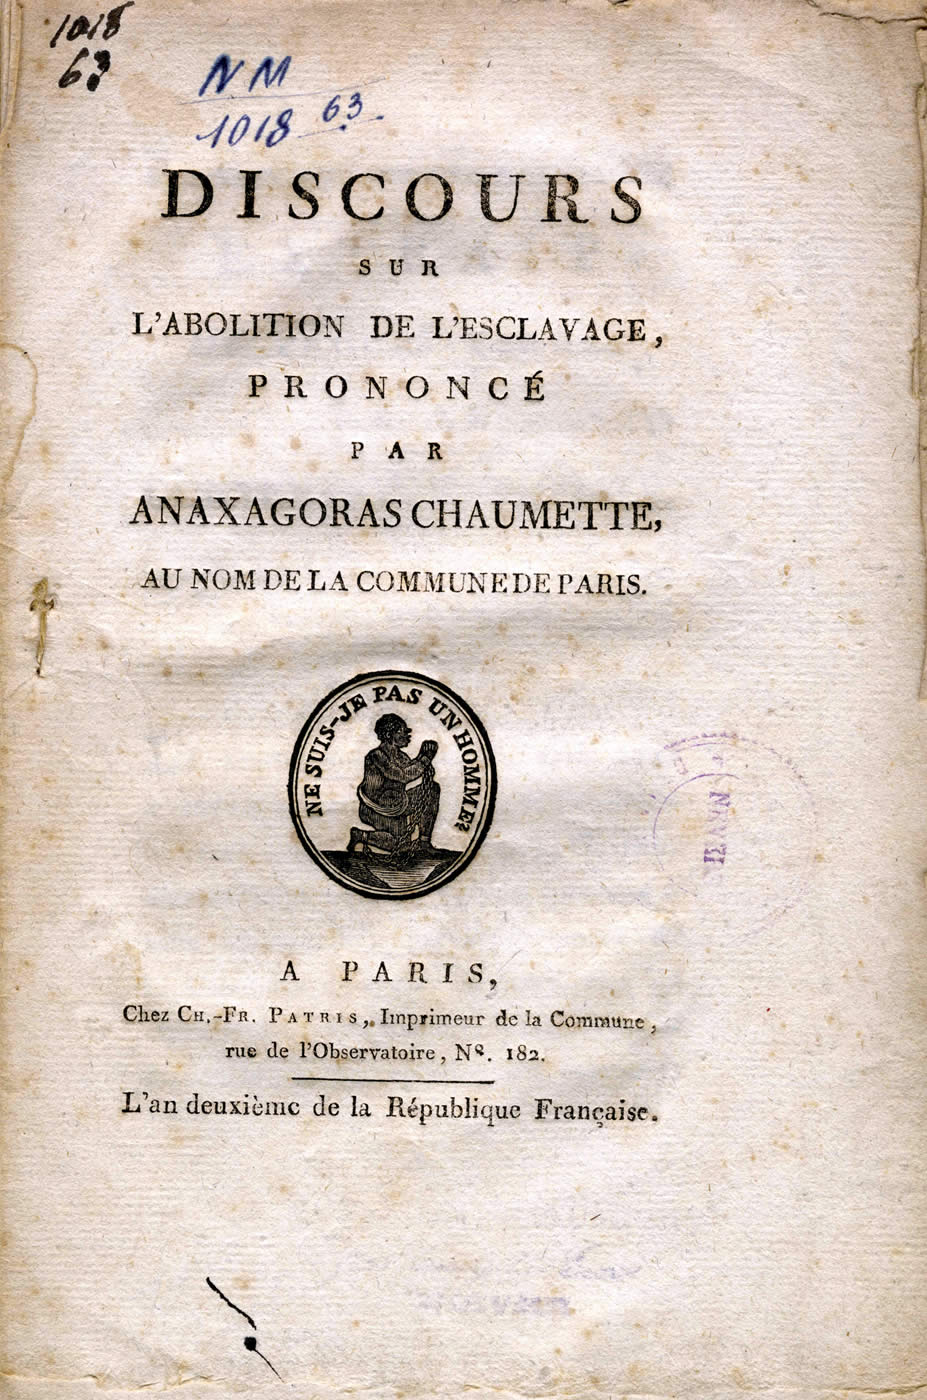 Discours sur l'abolition de l'Esclavage d'Anaxagoras Chaumette. Page de Titre.